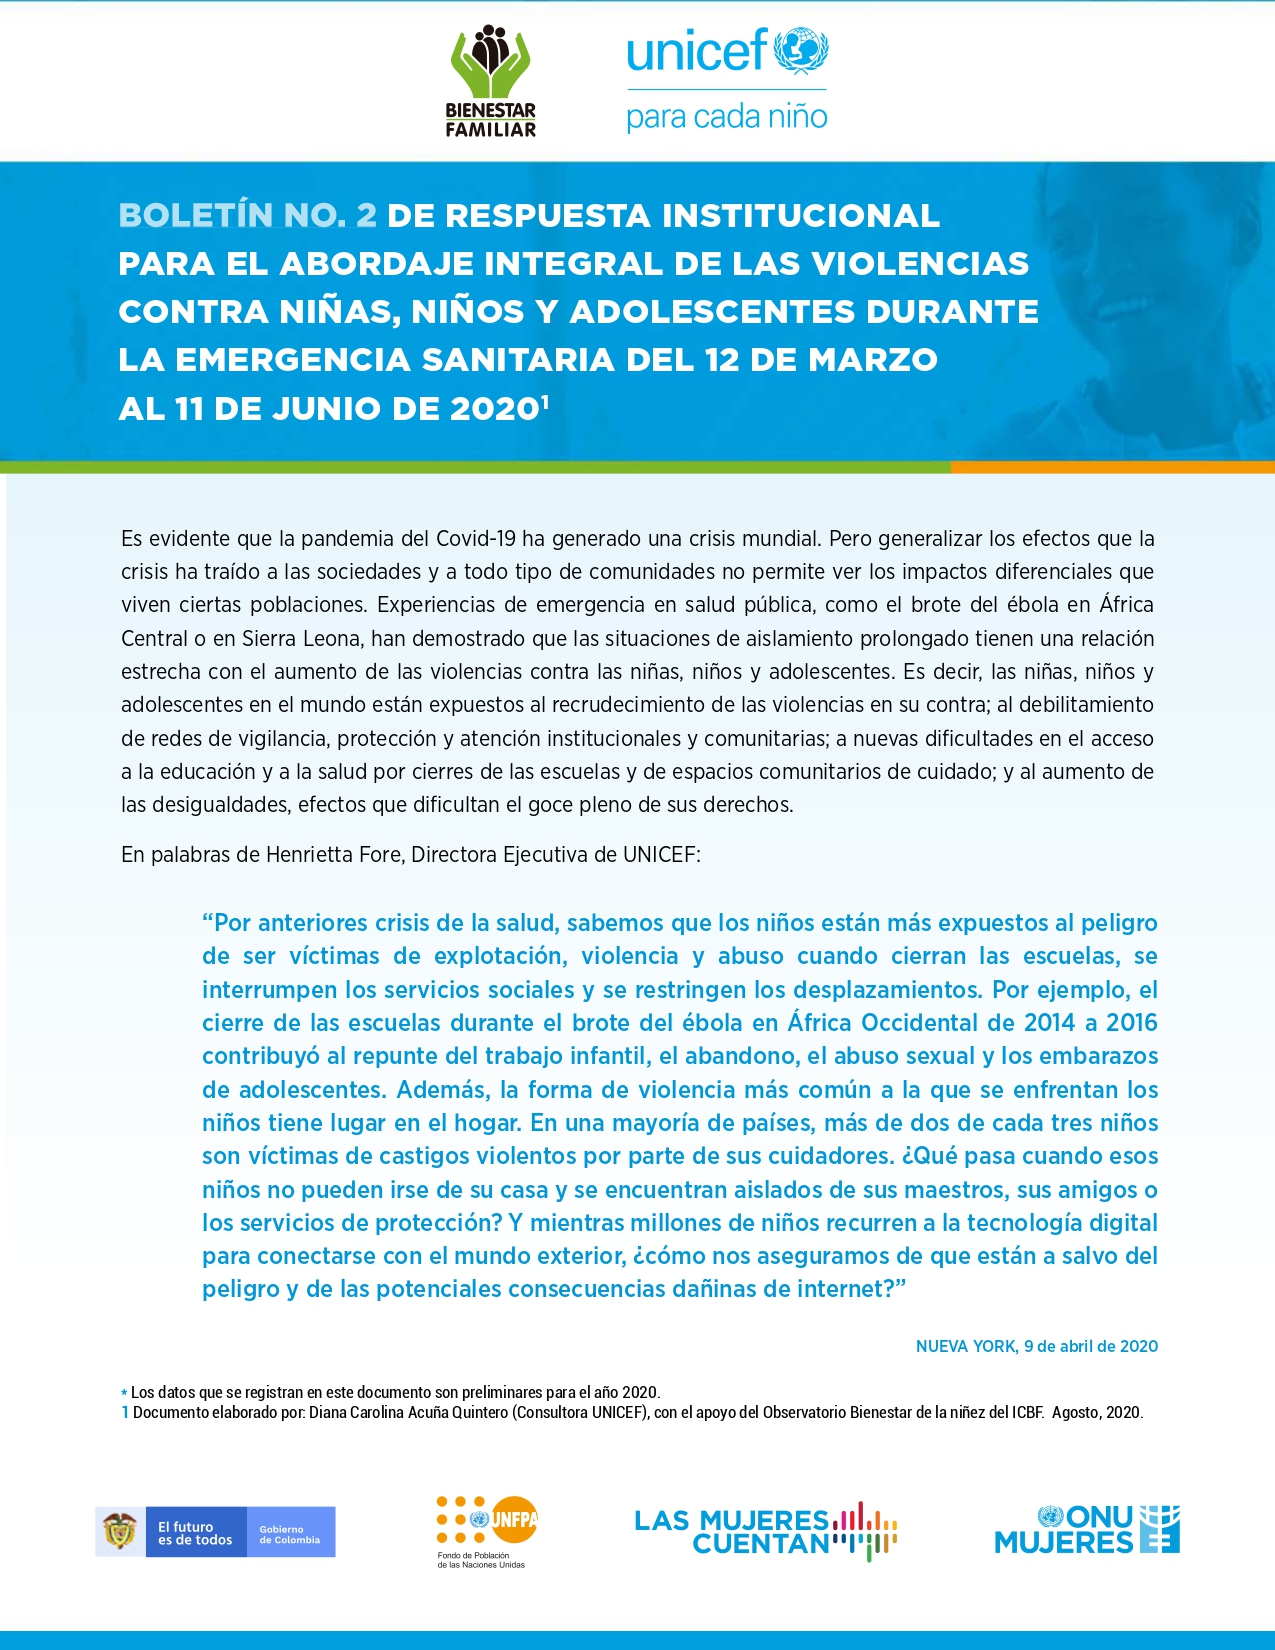 Respuesta institucional para el abordaje integral de las violencias contra niñas, niños y adolescentes durante la emergencia sanitaria del 12 de marzo al 11 de junio de 2020